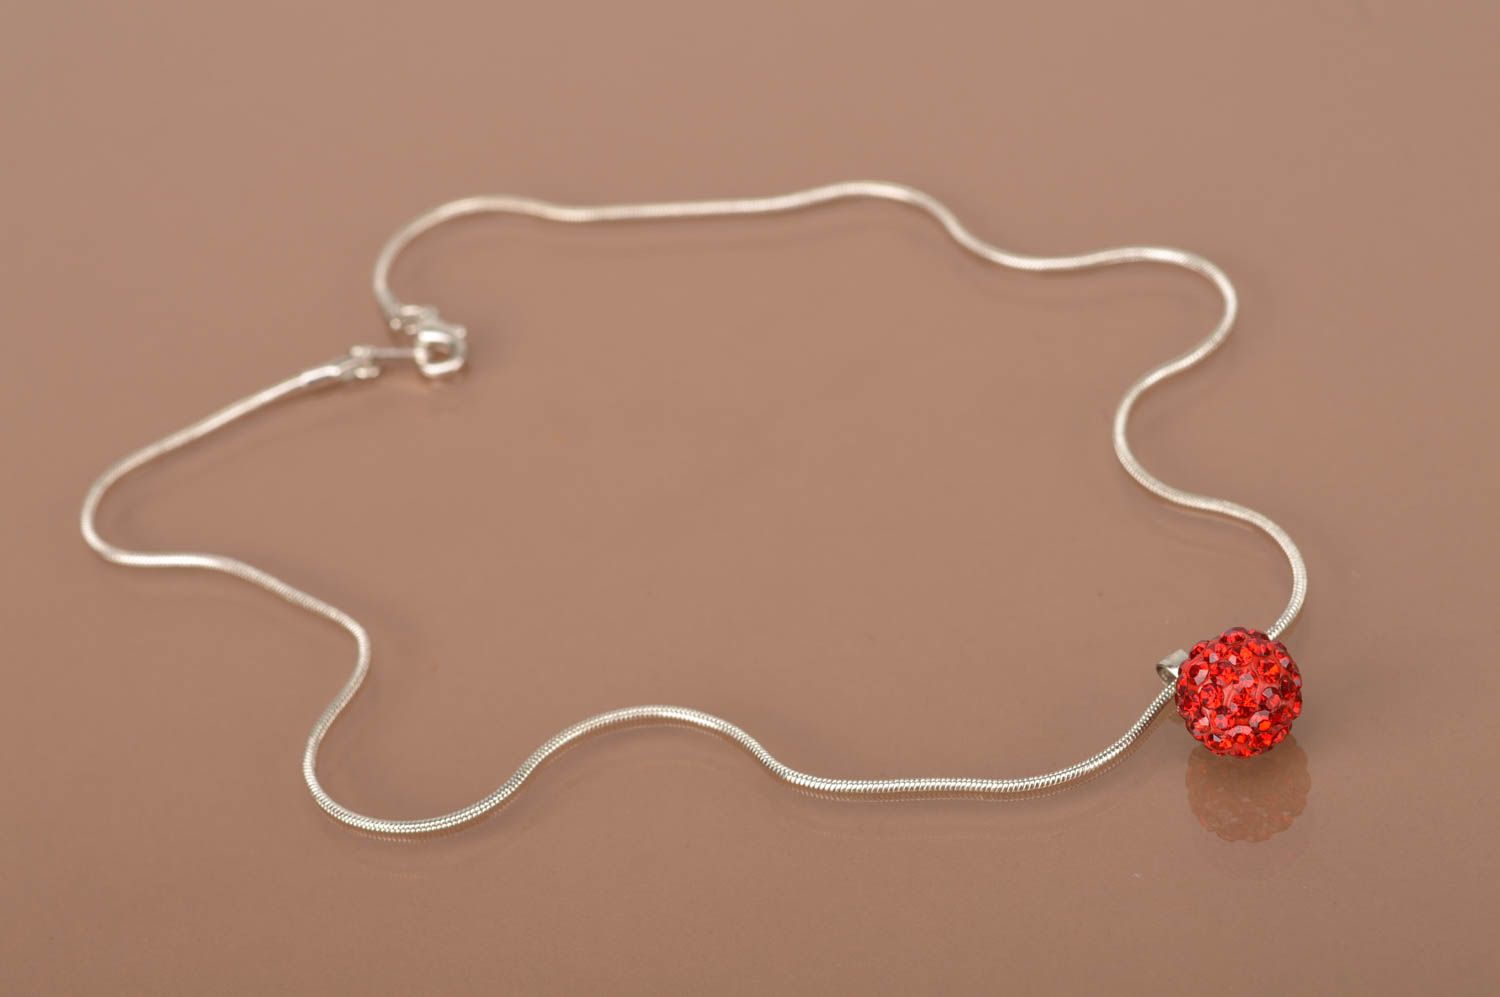 Handmade stylish pendant beautiful designer jewelry red feminine accessories photo 3